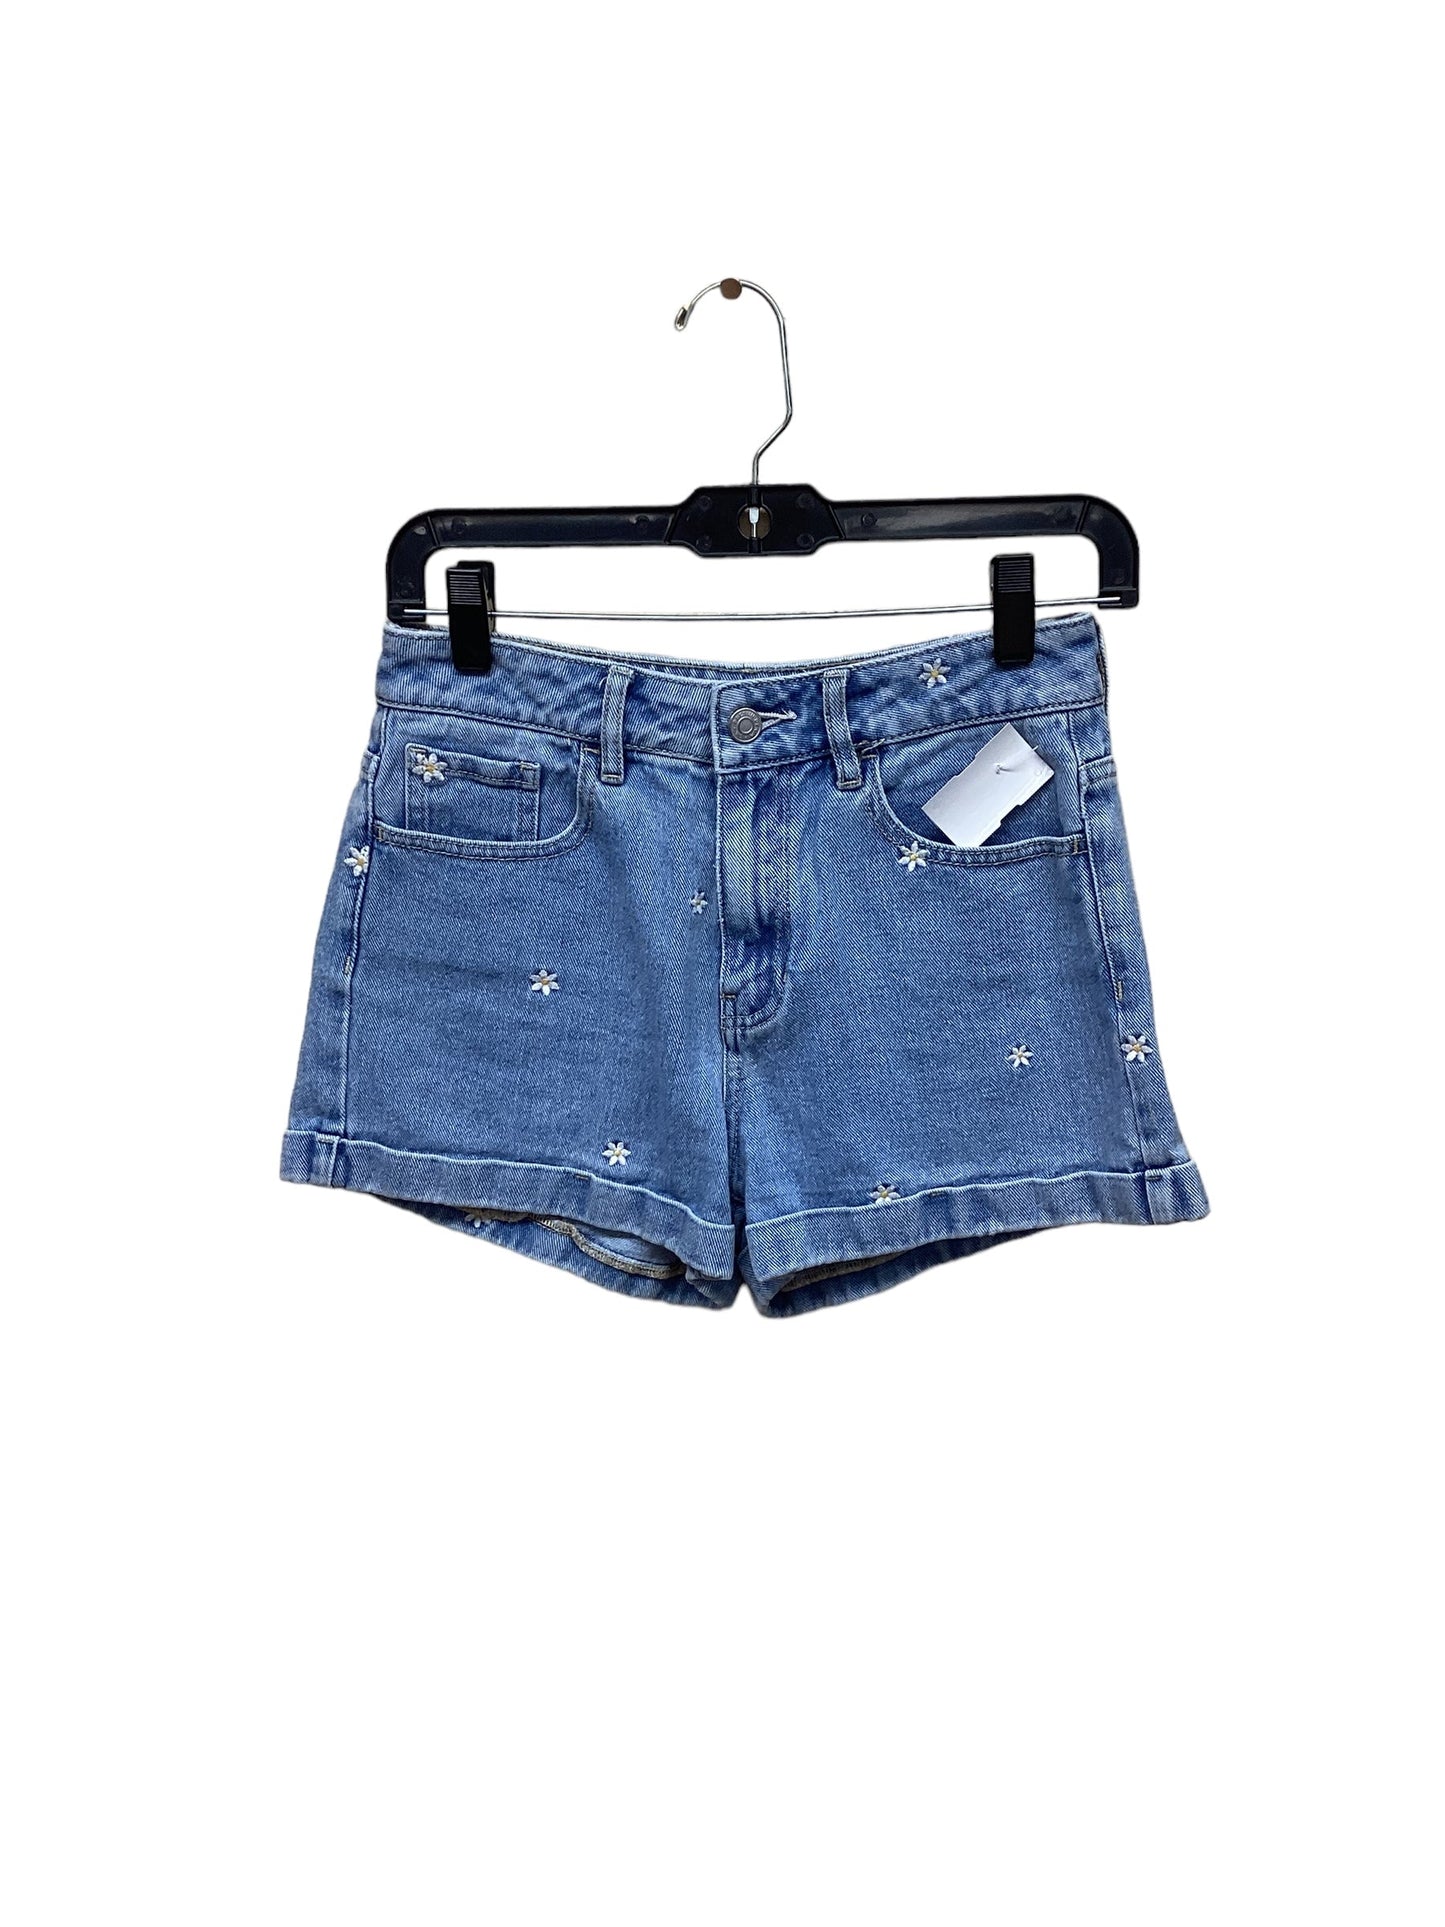 Blue Denim Shorts Pacsun, Size 0